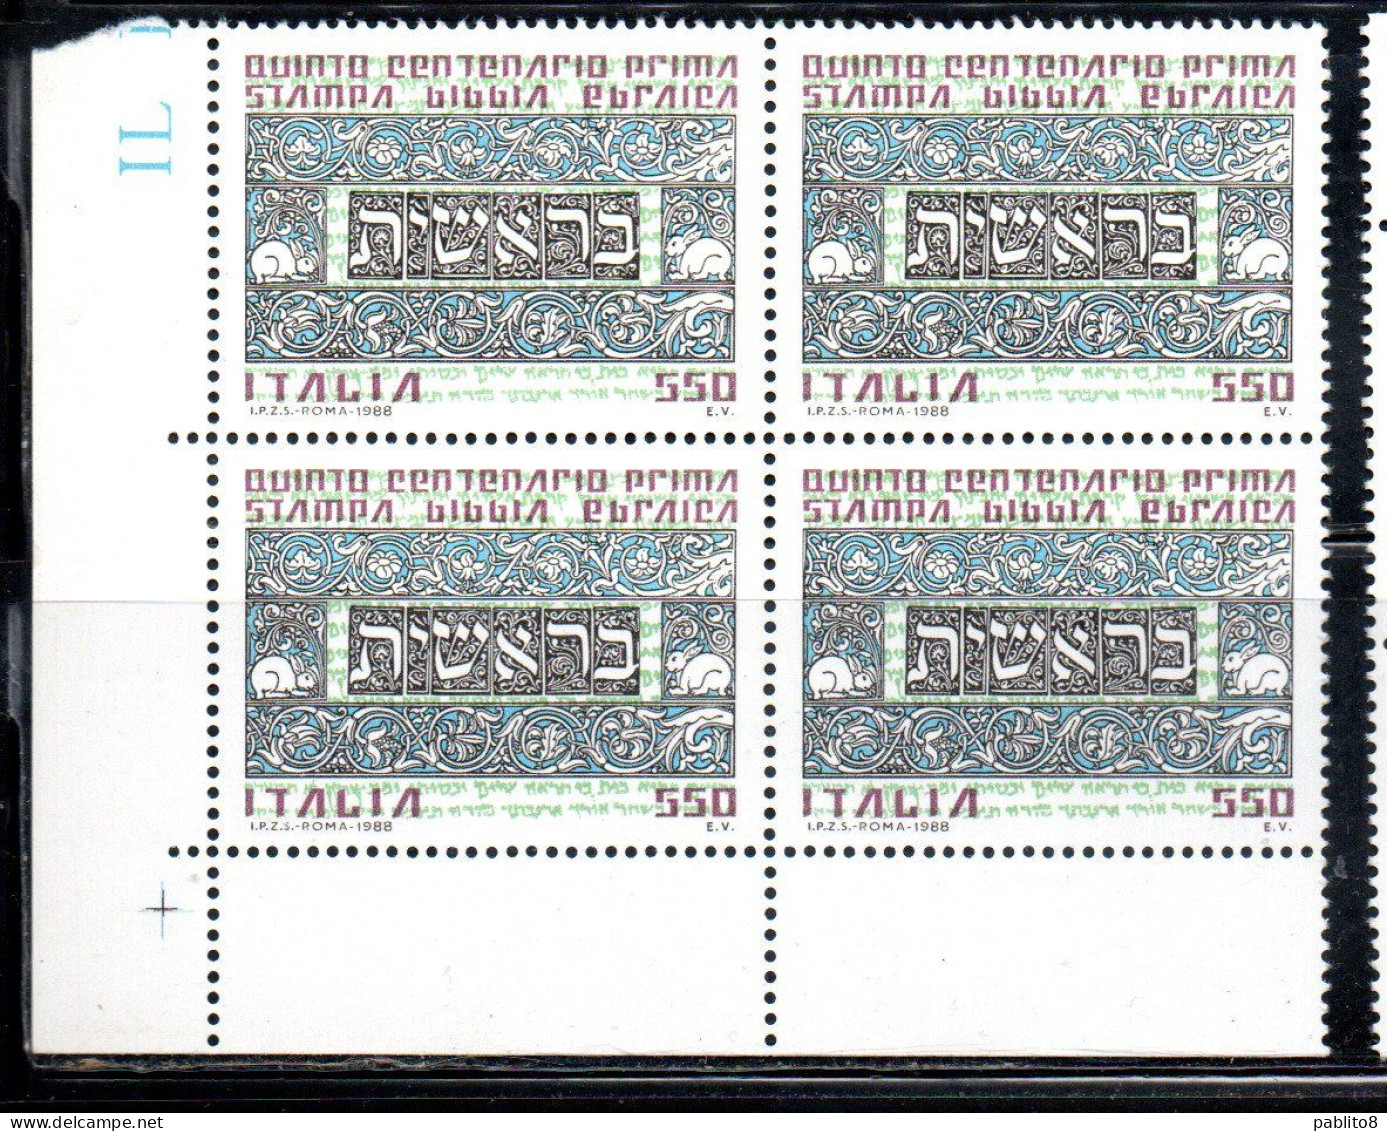 ITALIA REPUBBLICA ITALY REPUBLIC 1988 PRIMA STAMPA BIBBIA EBRAICA QUARTINA ANGOLO DI FOGLIO BLOCK MNH - 1981-90: Mint/hinged